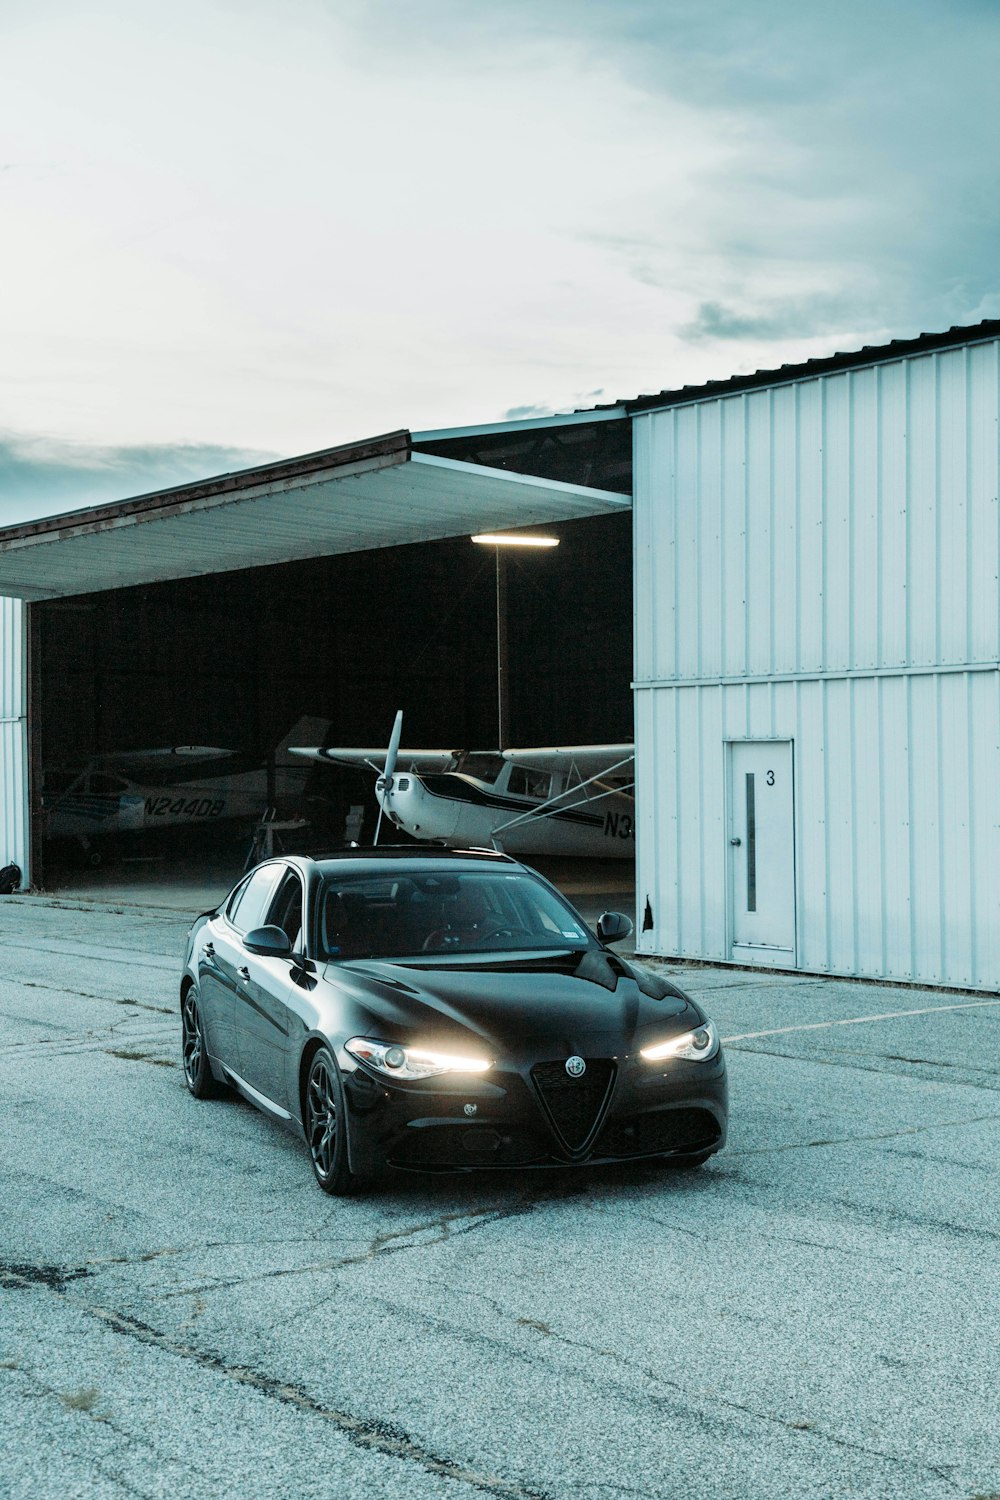 Un coche negro aparcado frente a un hangar